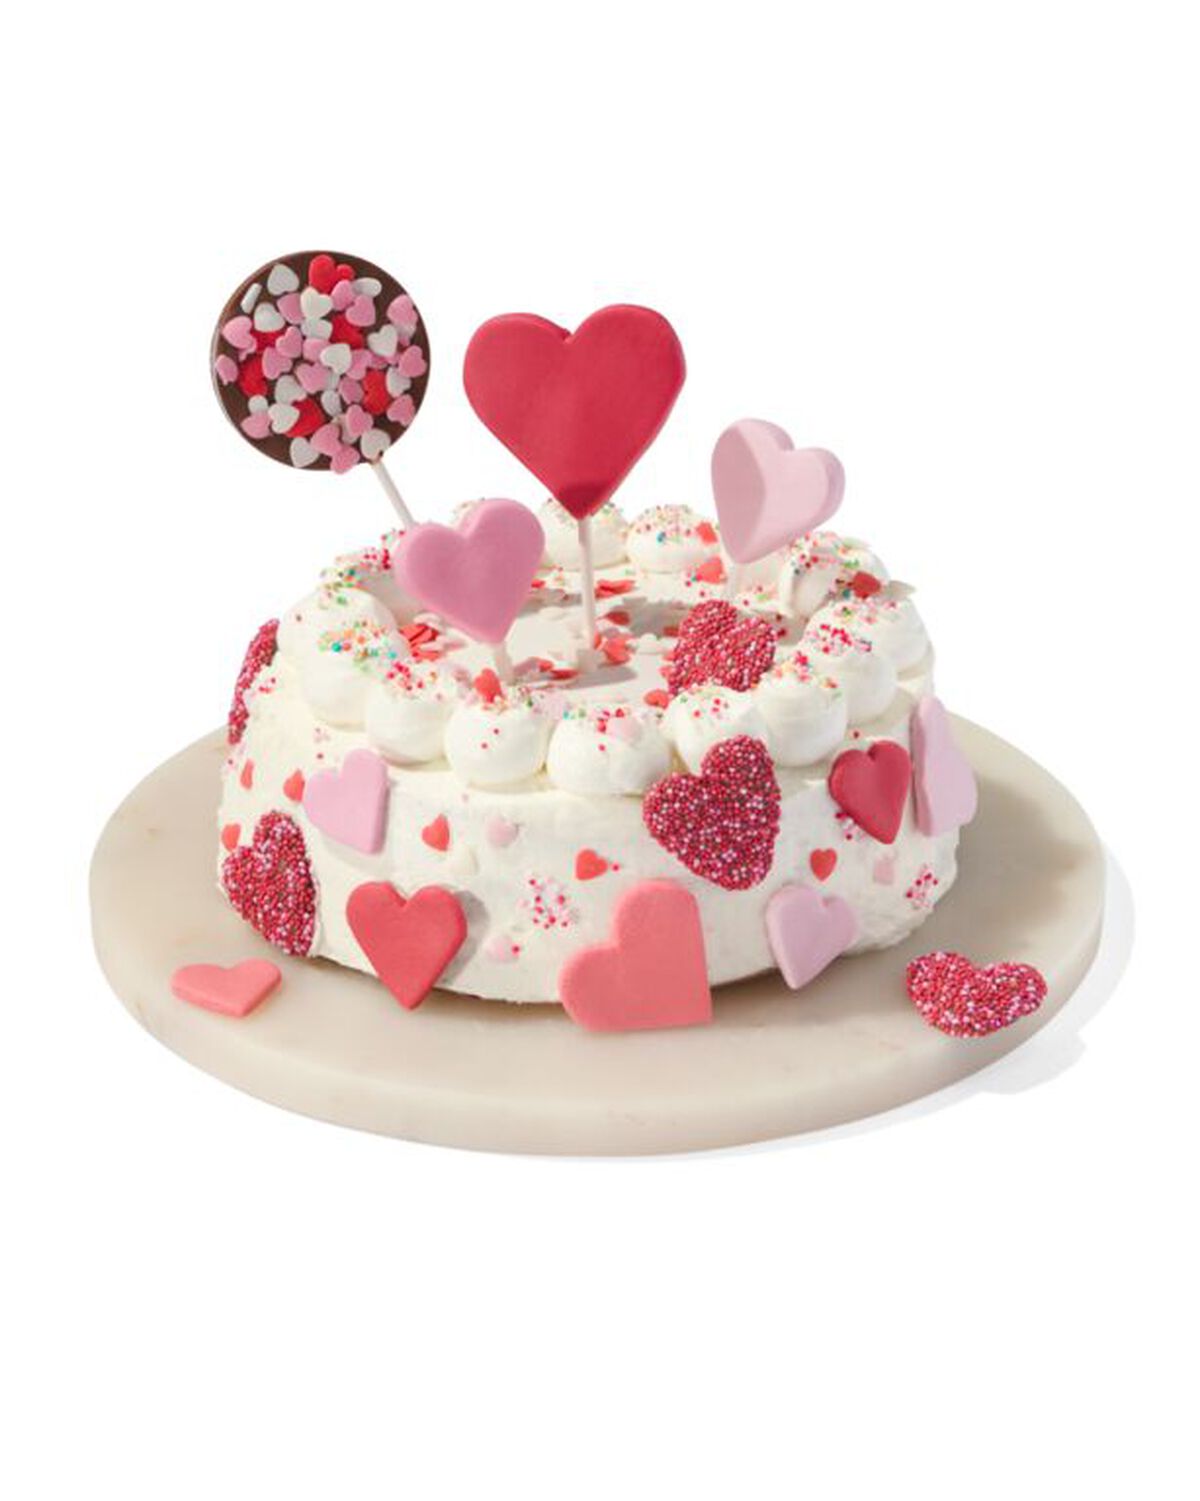 décoration de gâteau en forme de cœurs - 200755 - HEMA